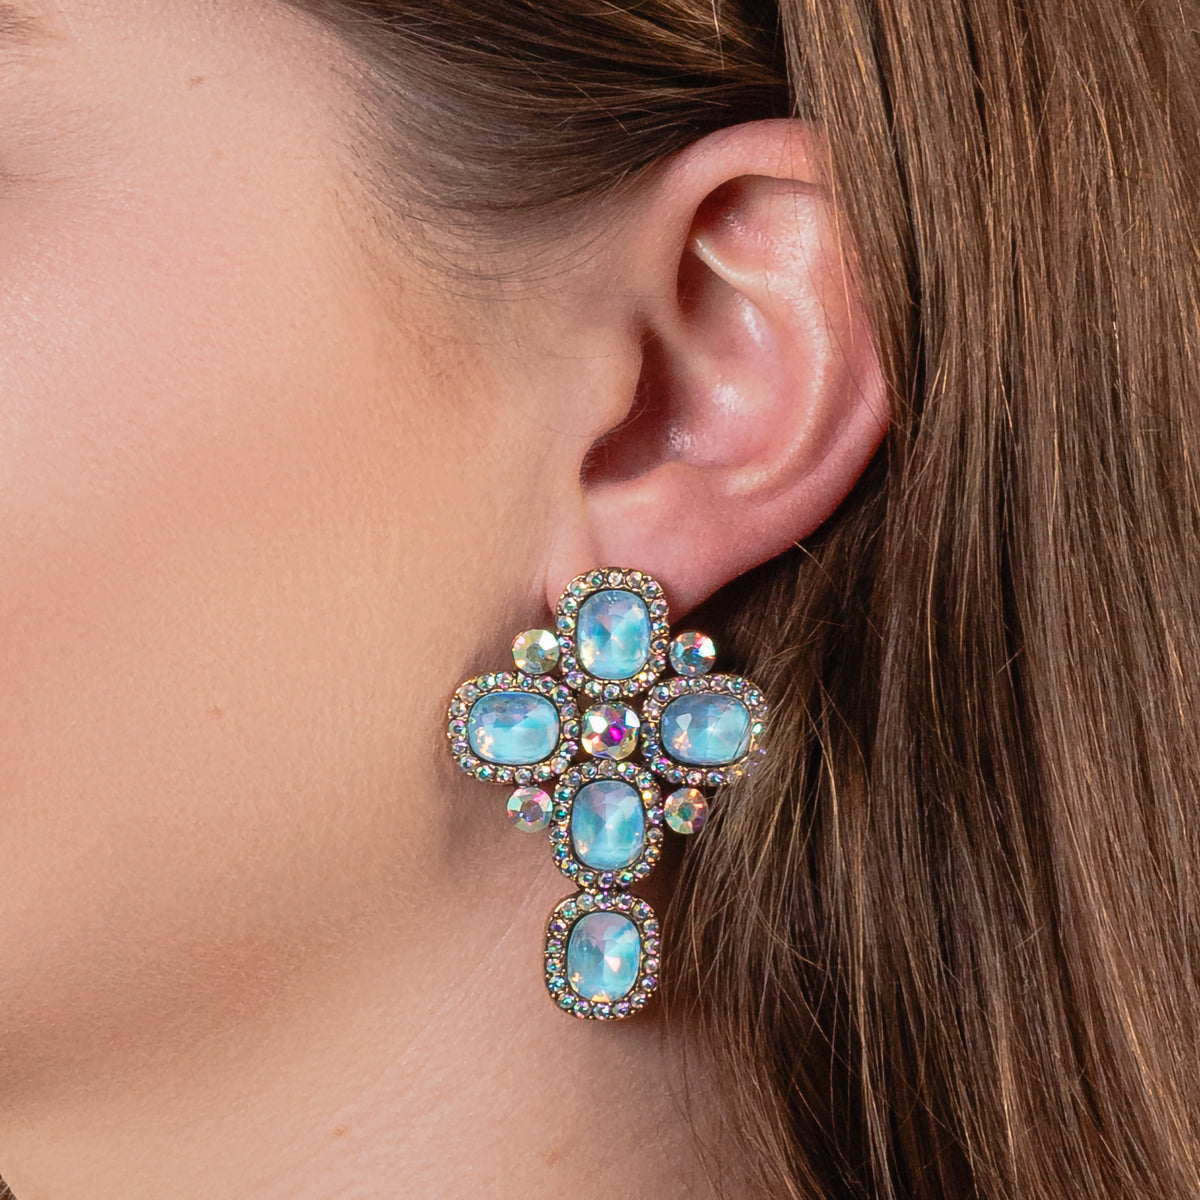 1315 - Crystal Cross Earrings - Blue